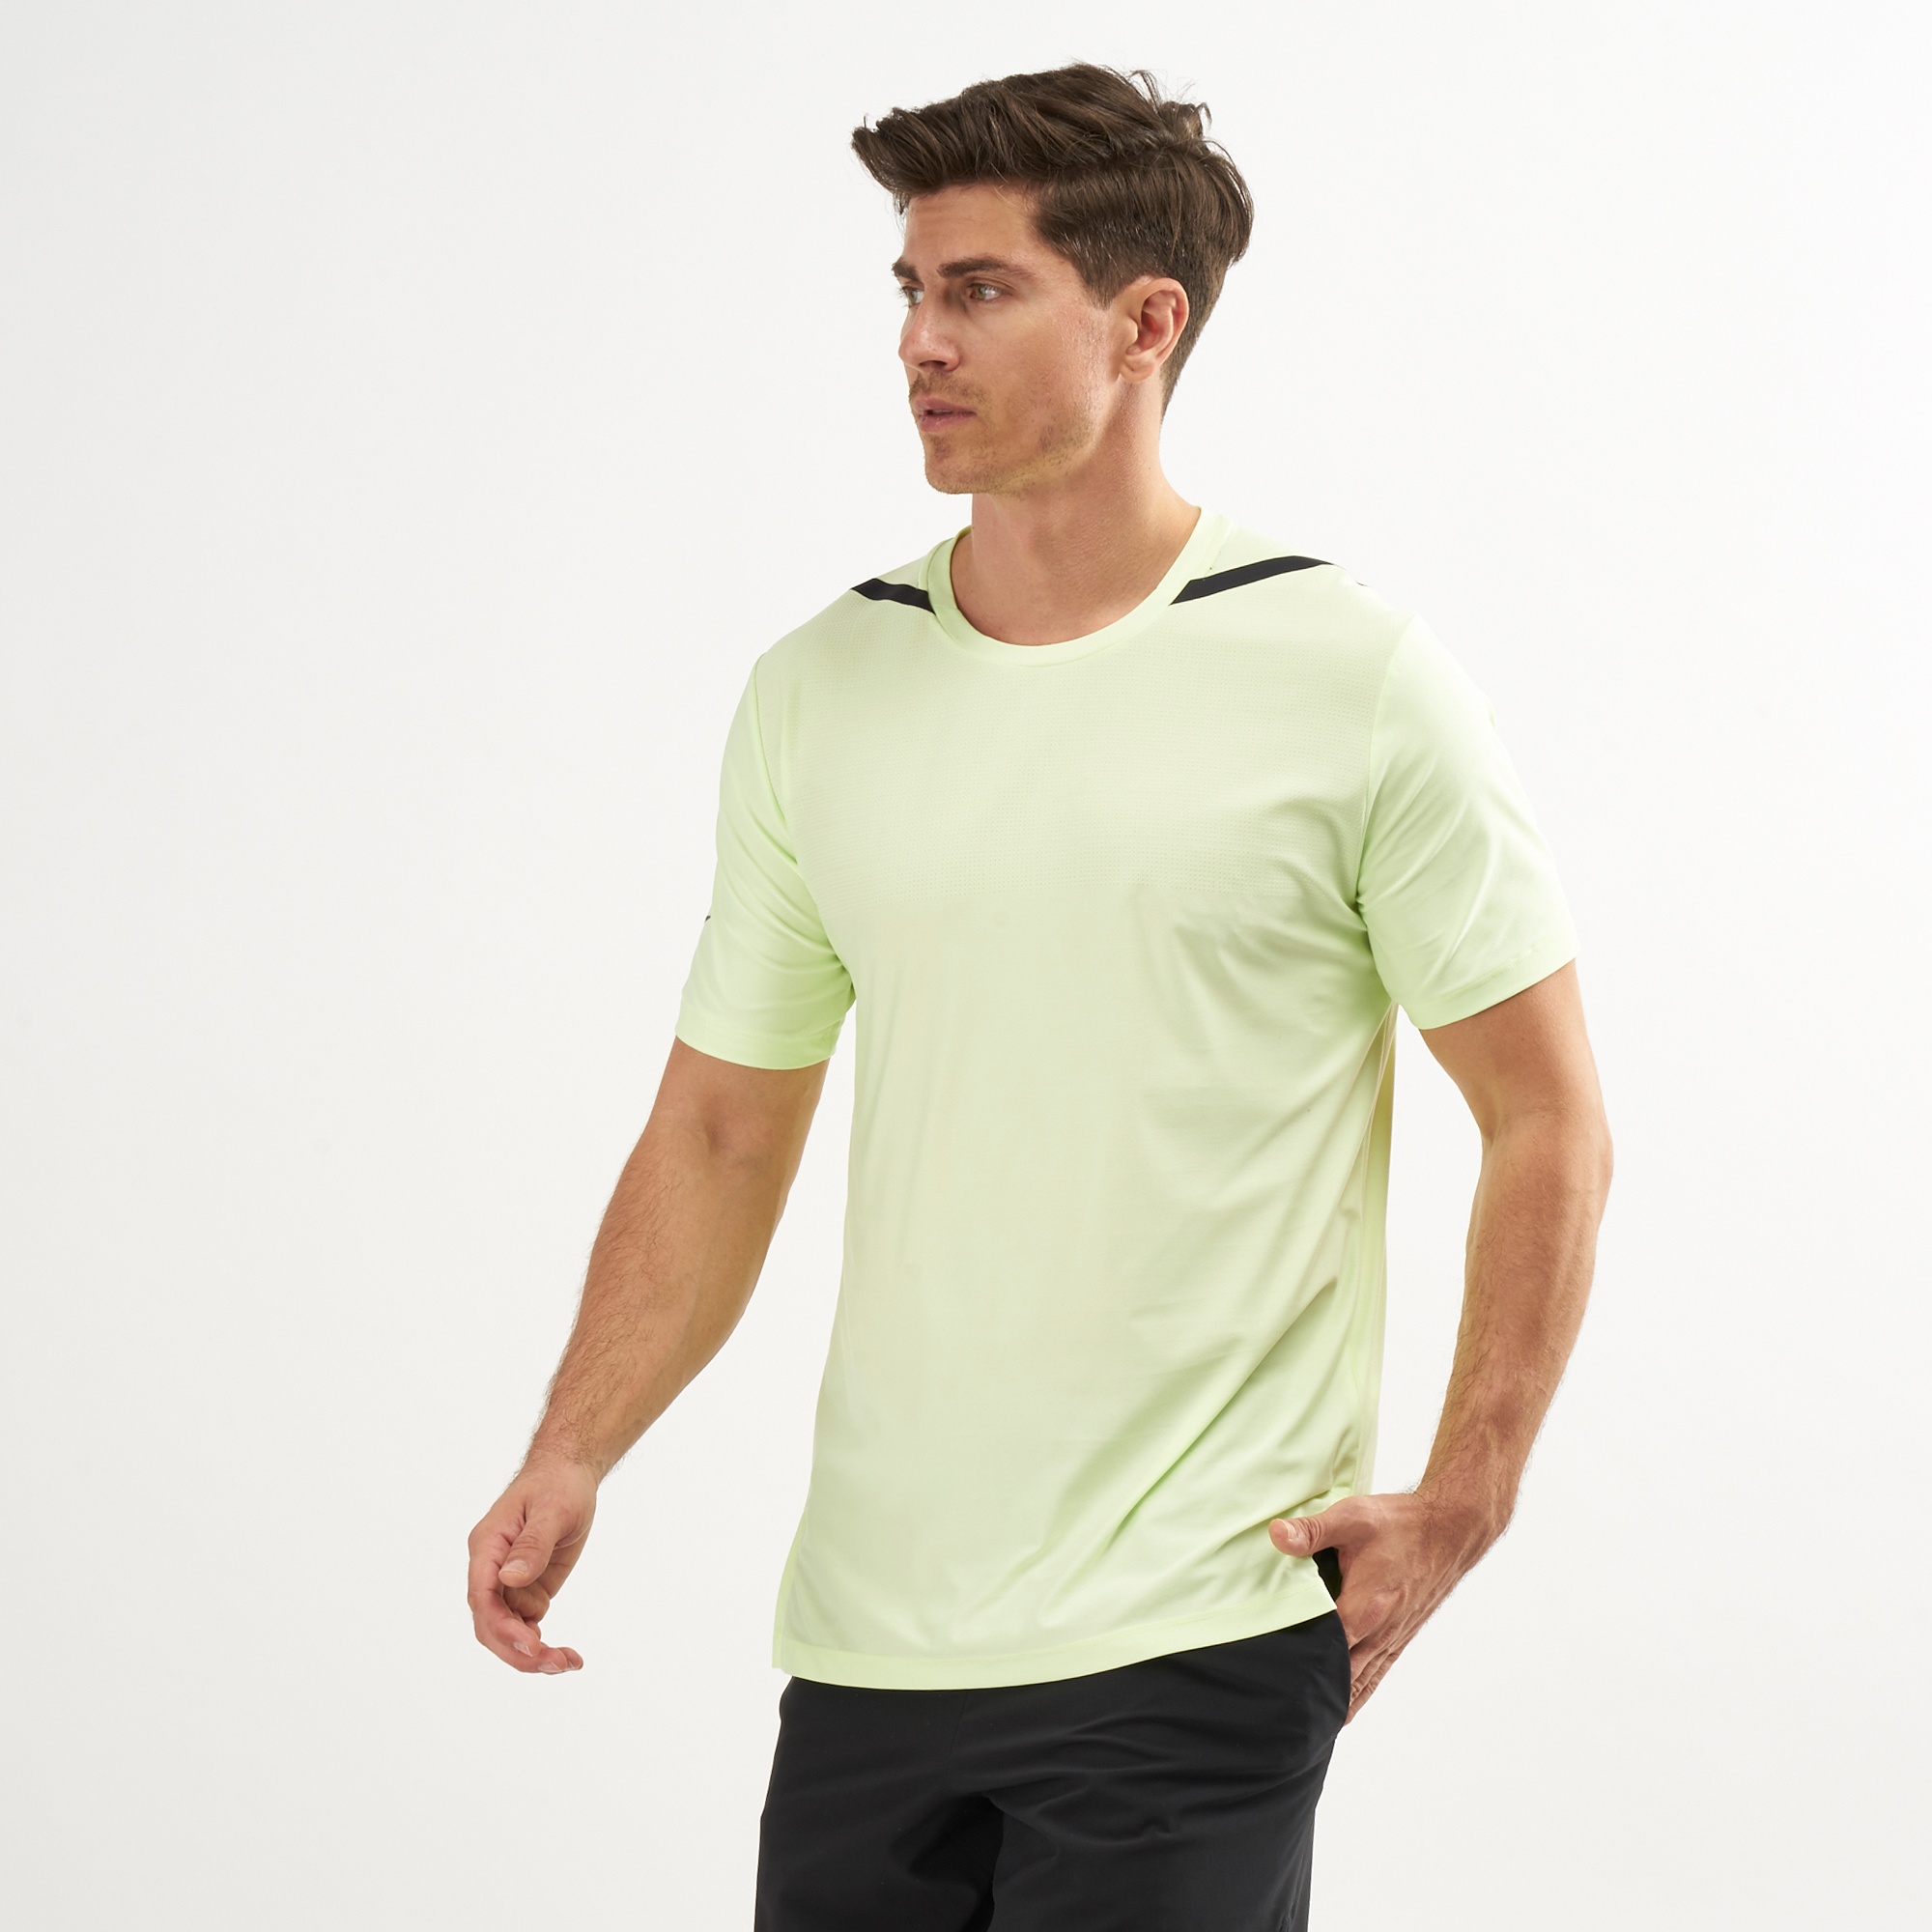 Buy Nike Men’s Dry Tech Pack T-Shirt Online in Dubai, UAE | SSS